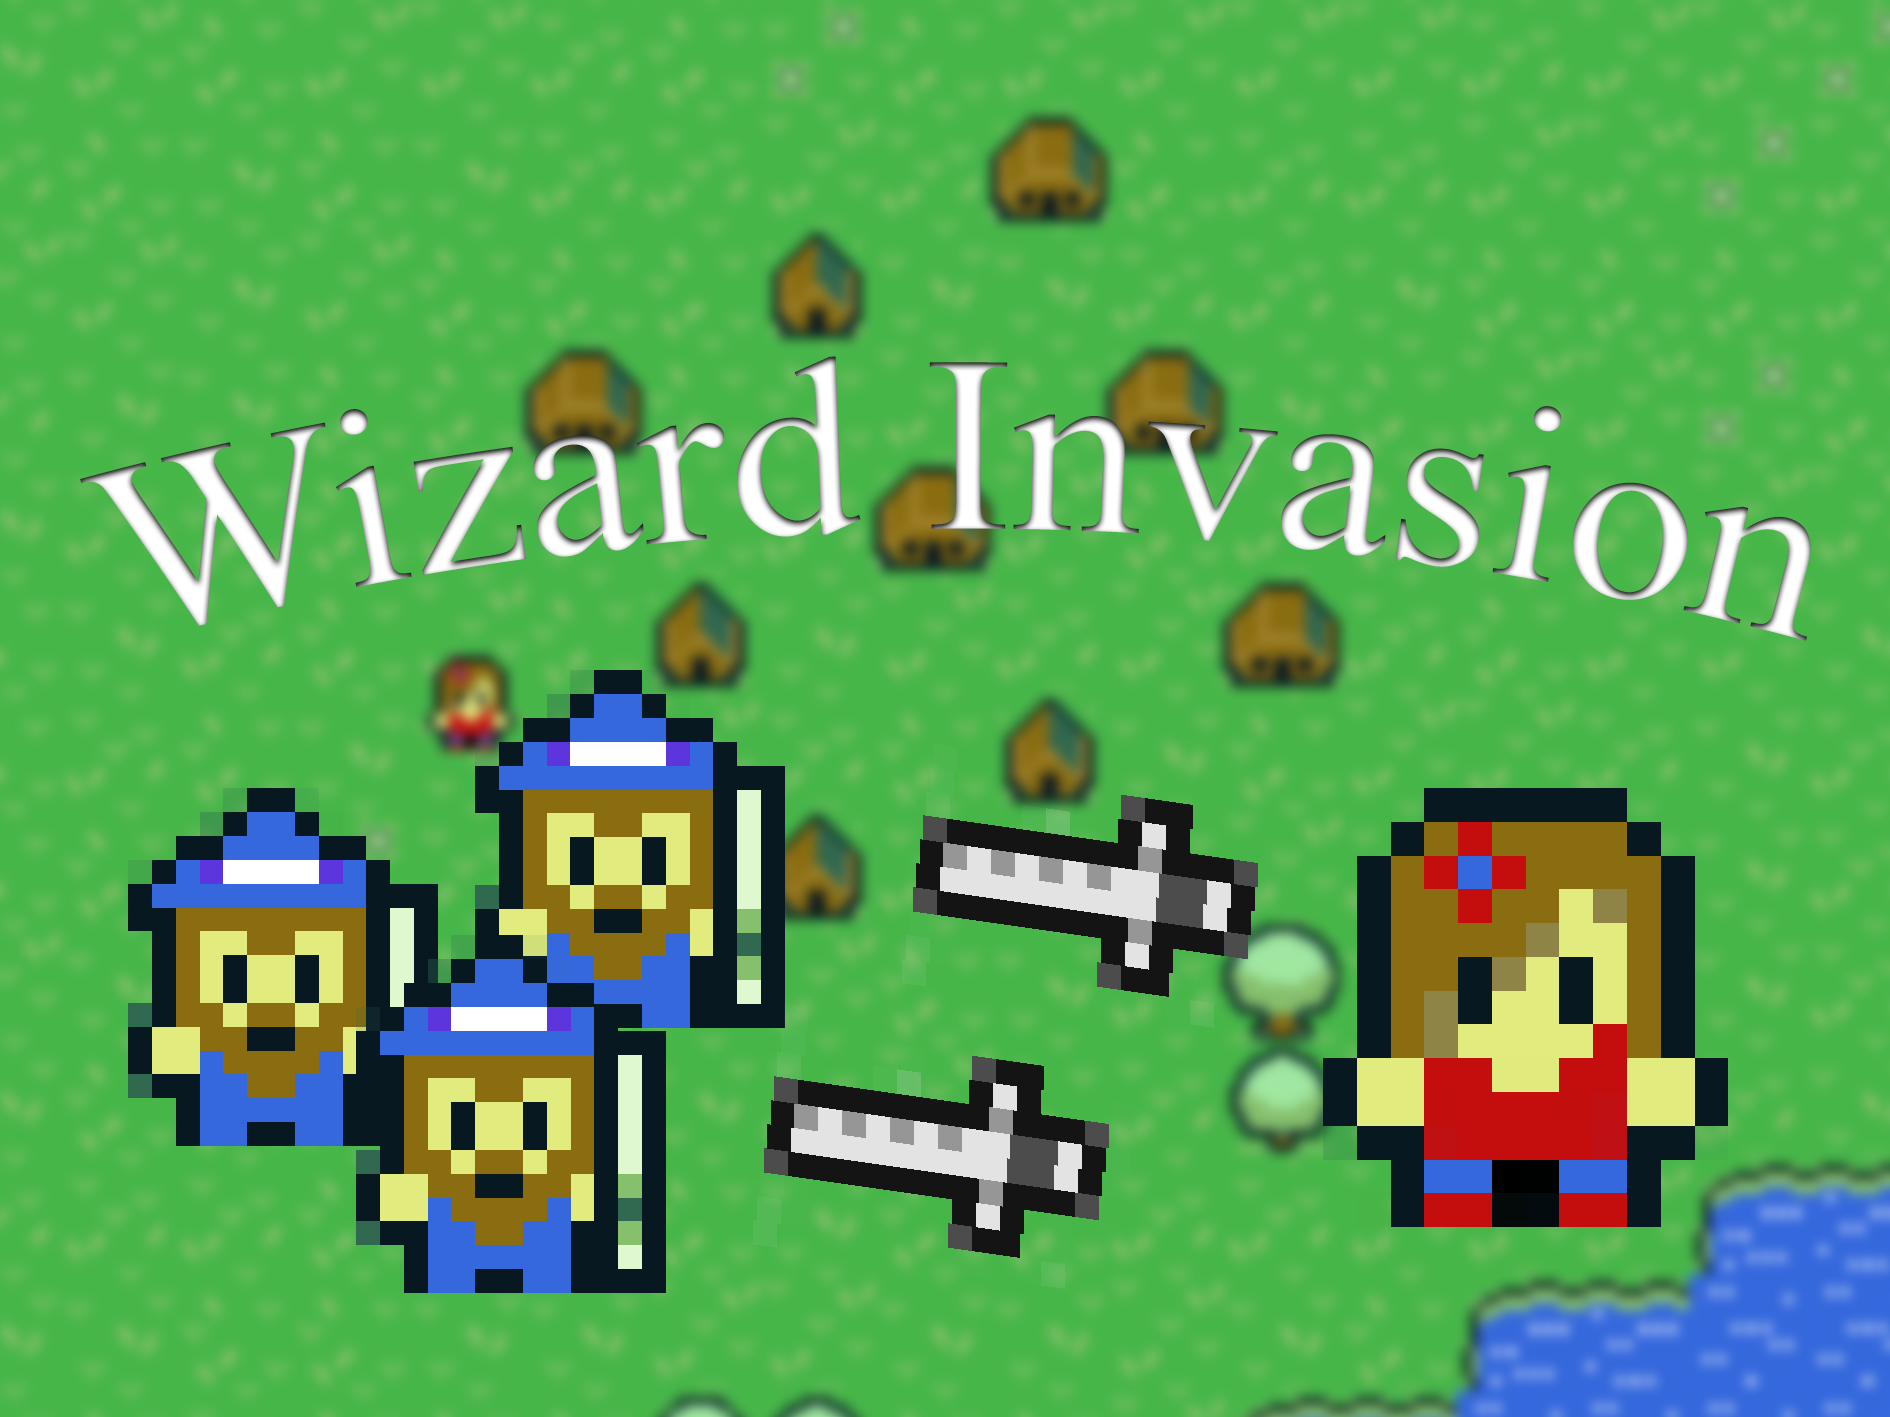 Wizard invasion